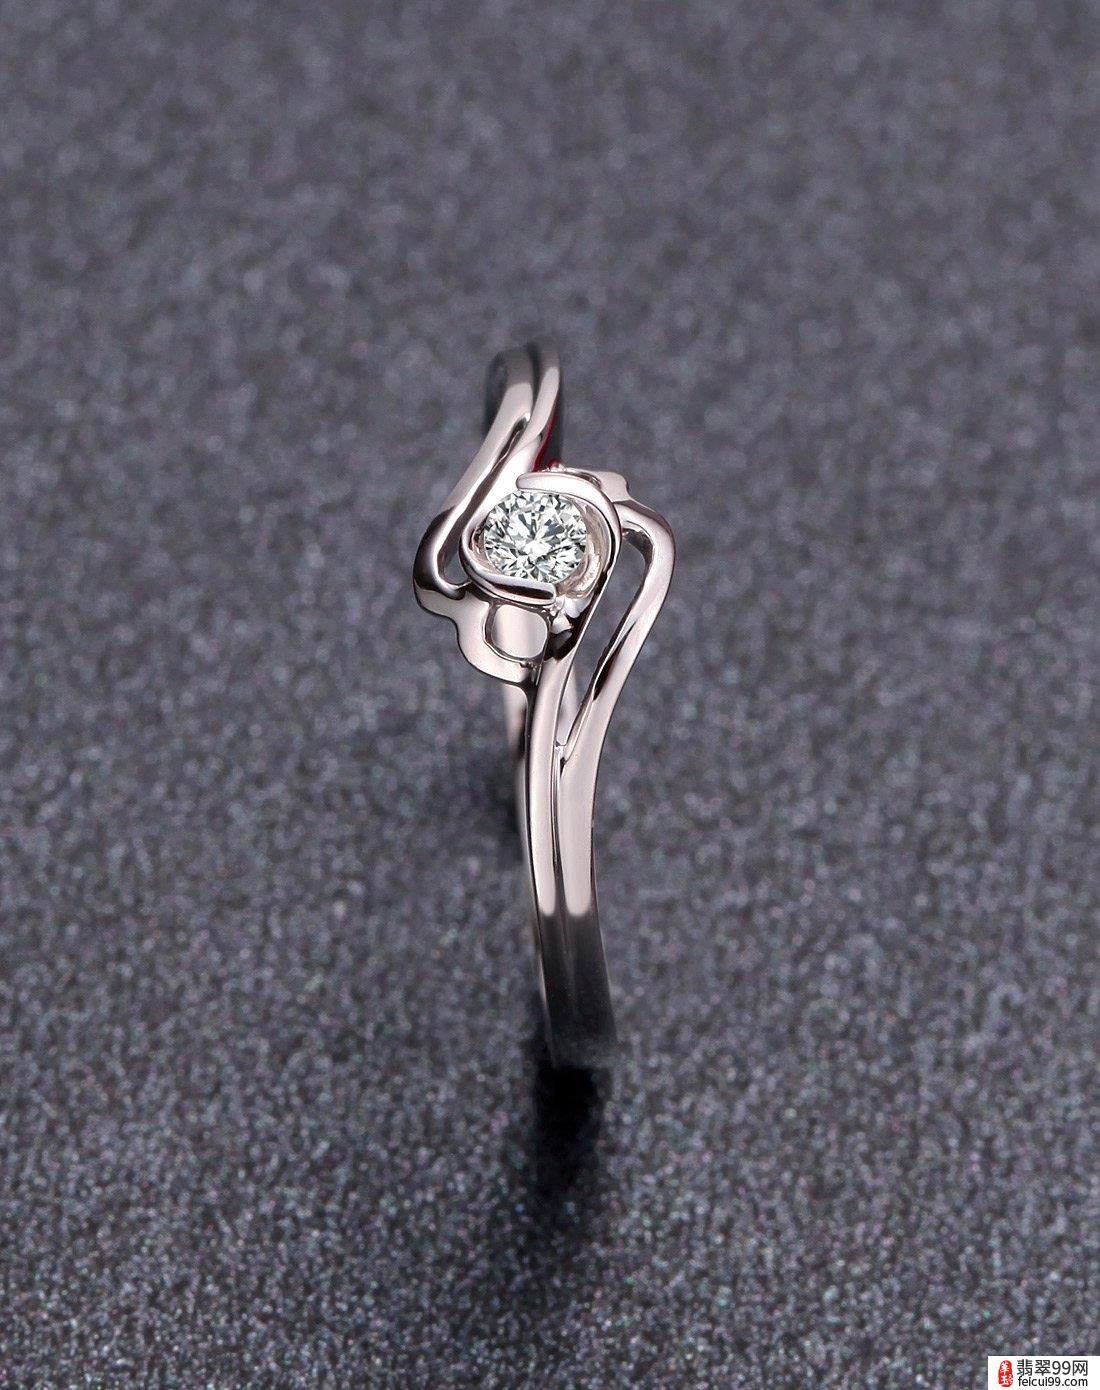 翡翠950铂金钻石戒指 而铂金戒指品牌的不同也导致了铂金戒指价格的不同